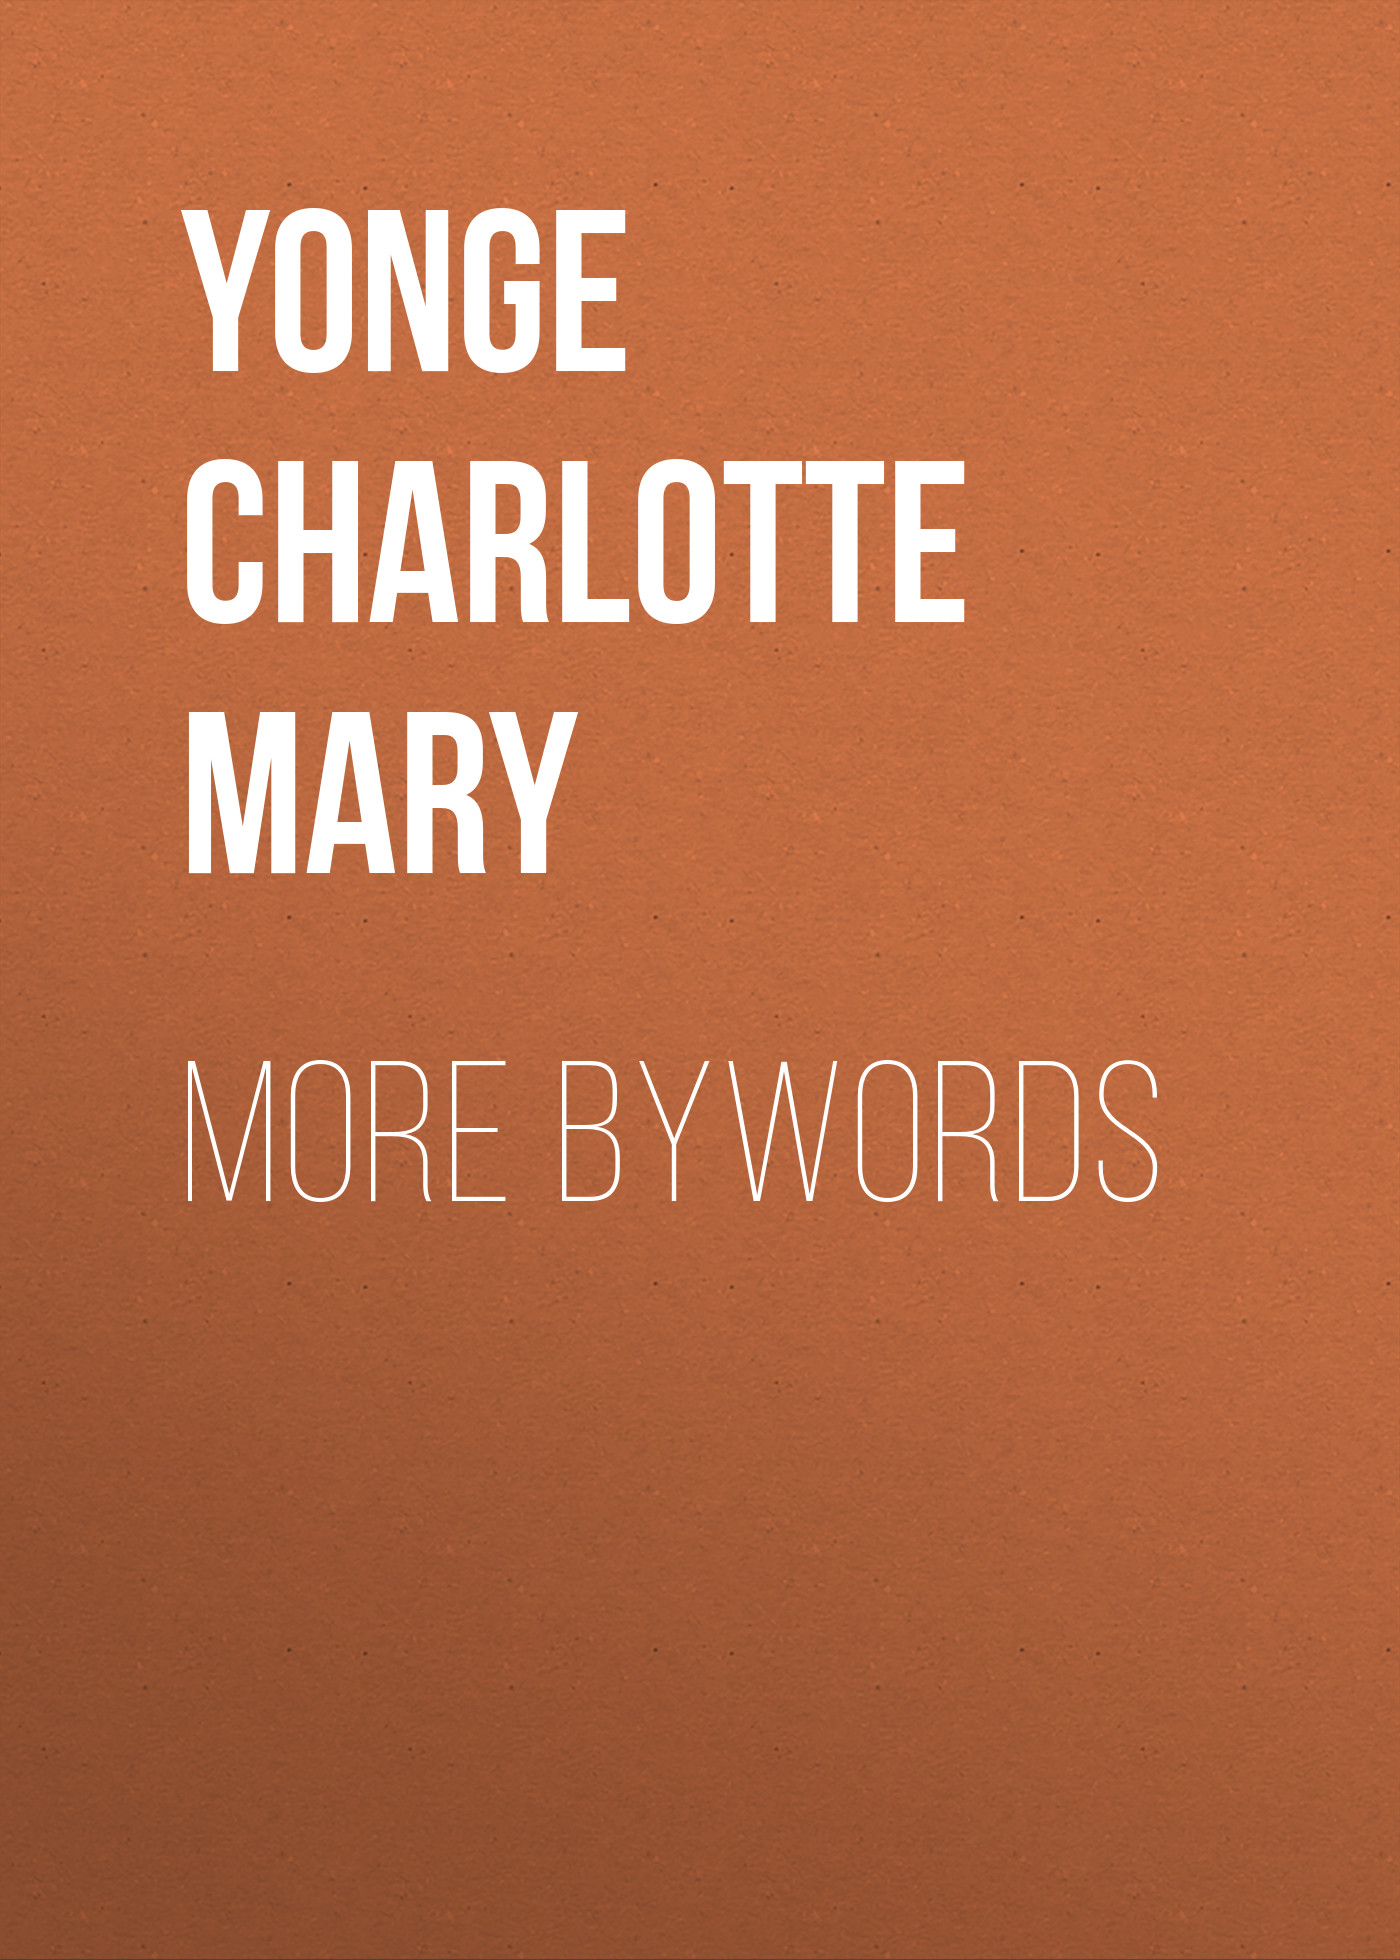 Книга More Bywords из серии , созданная Charlotte Yonge, может относится к жанру Зарубежные стихи, Литература 19 века, Поэзия, Зарубежная старинная литература, Зарубежная классика. Стоимость электронной книги More Bywords с идентификатором 36095597 составляет 0 руб.